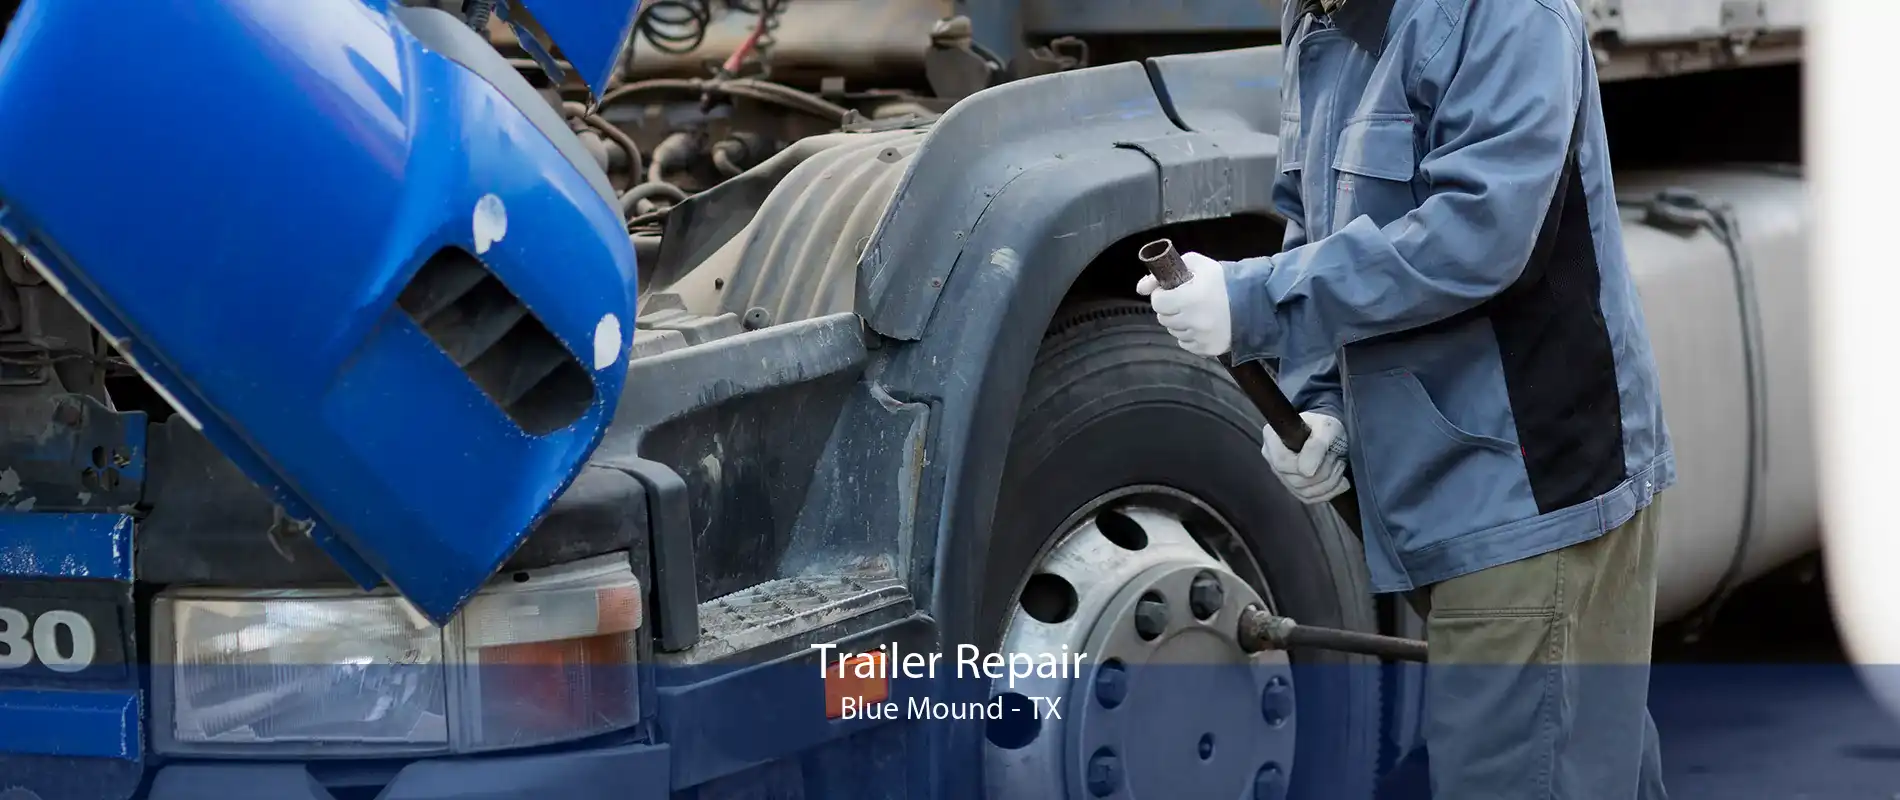 Trailer Repair Blue Mound - TX